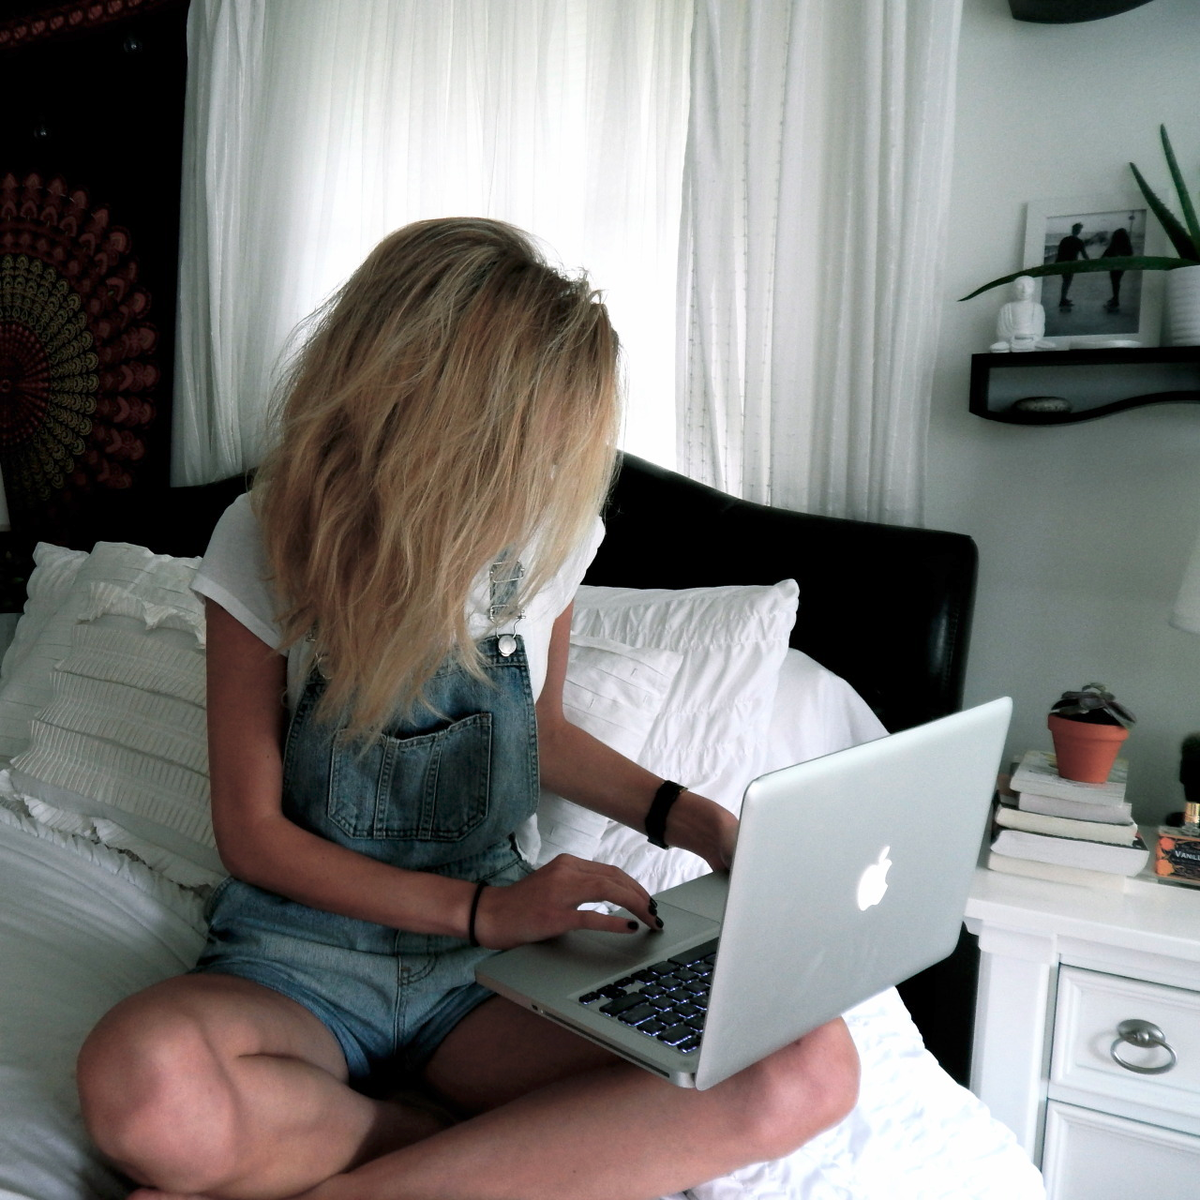 Картинку сидим дома. Блондинка с ноутбуком. Девушка с ноутом. Девушка сидит за компьютером. Красивая девушка с ноутбуком.